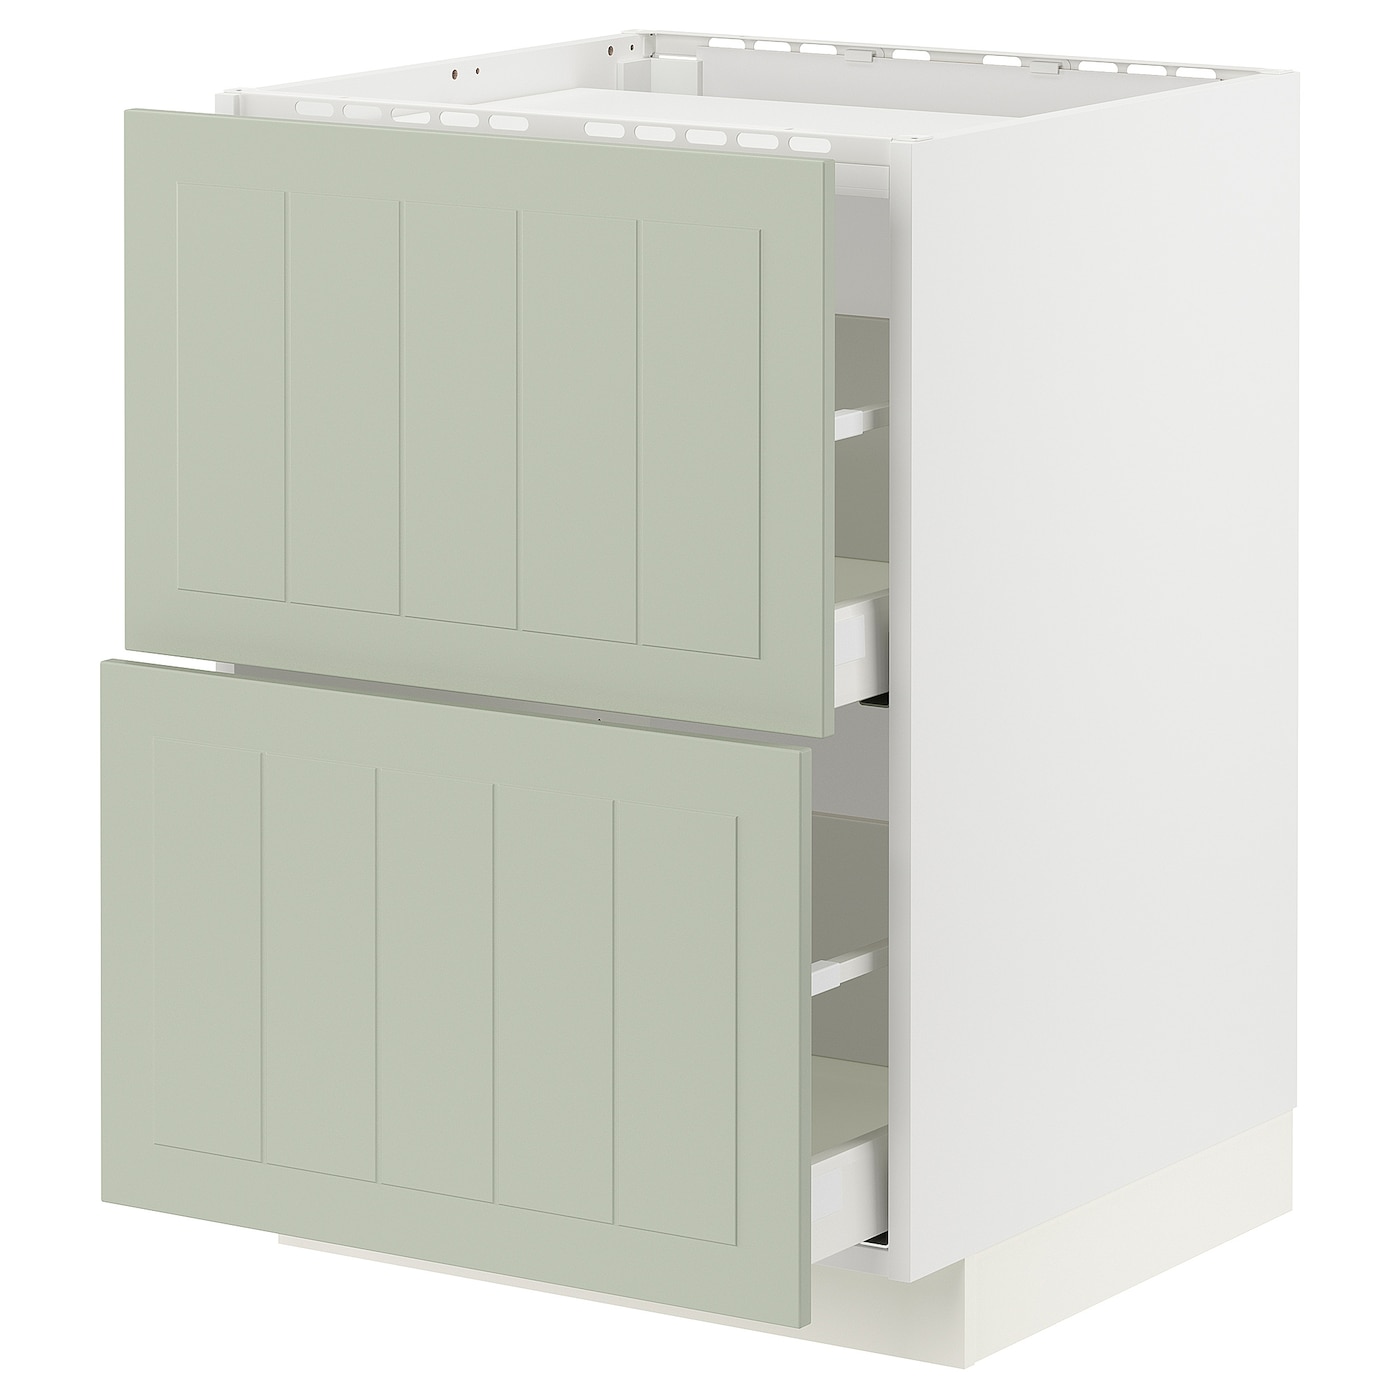 Шкаф - METOD / MAXIMERA IKEA/ МЕТОД / МАКСИМЕРА ИКЕА, 88х60 см, белый/зеленый